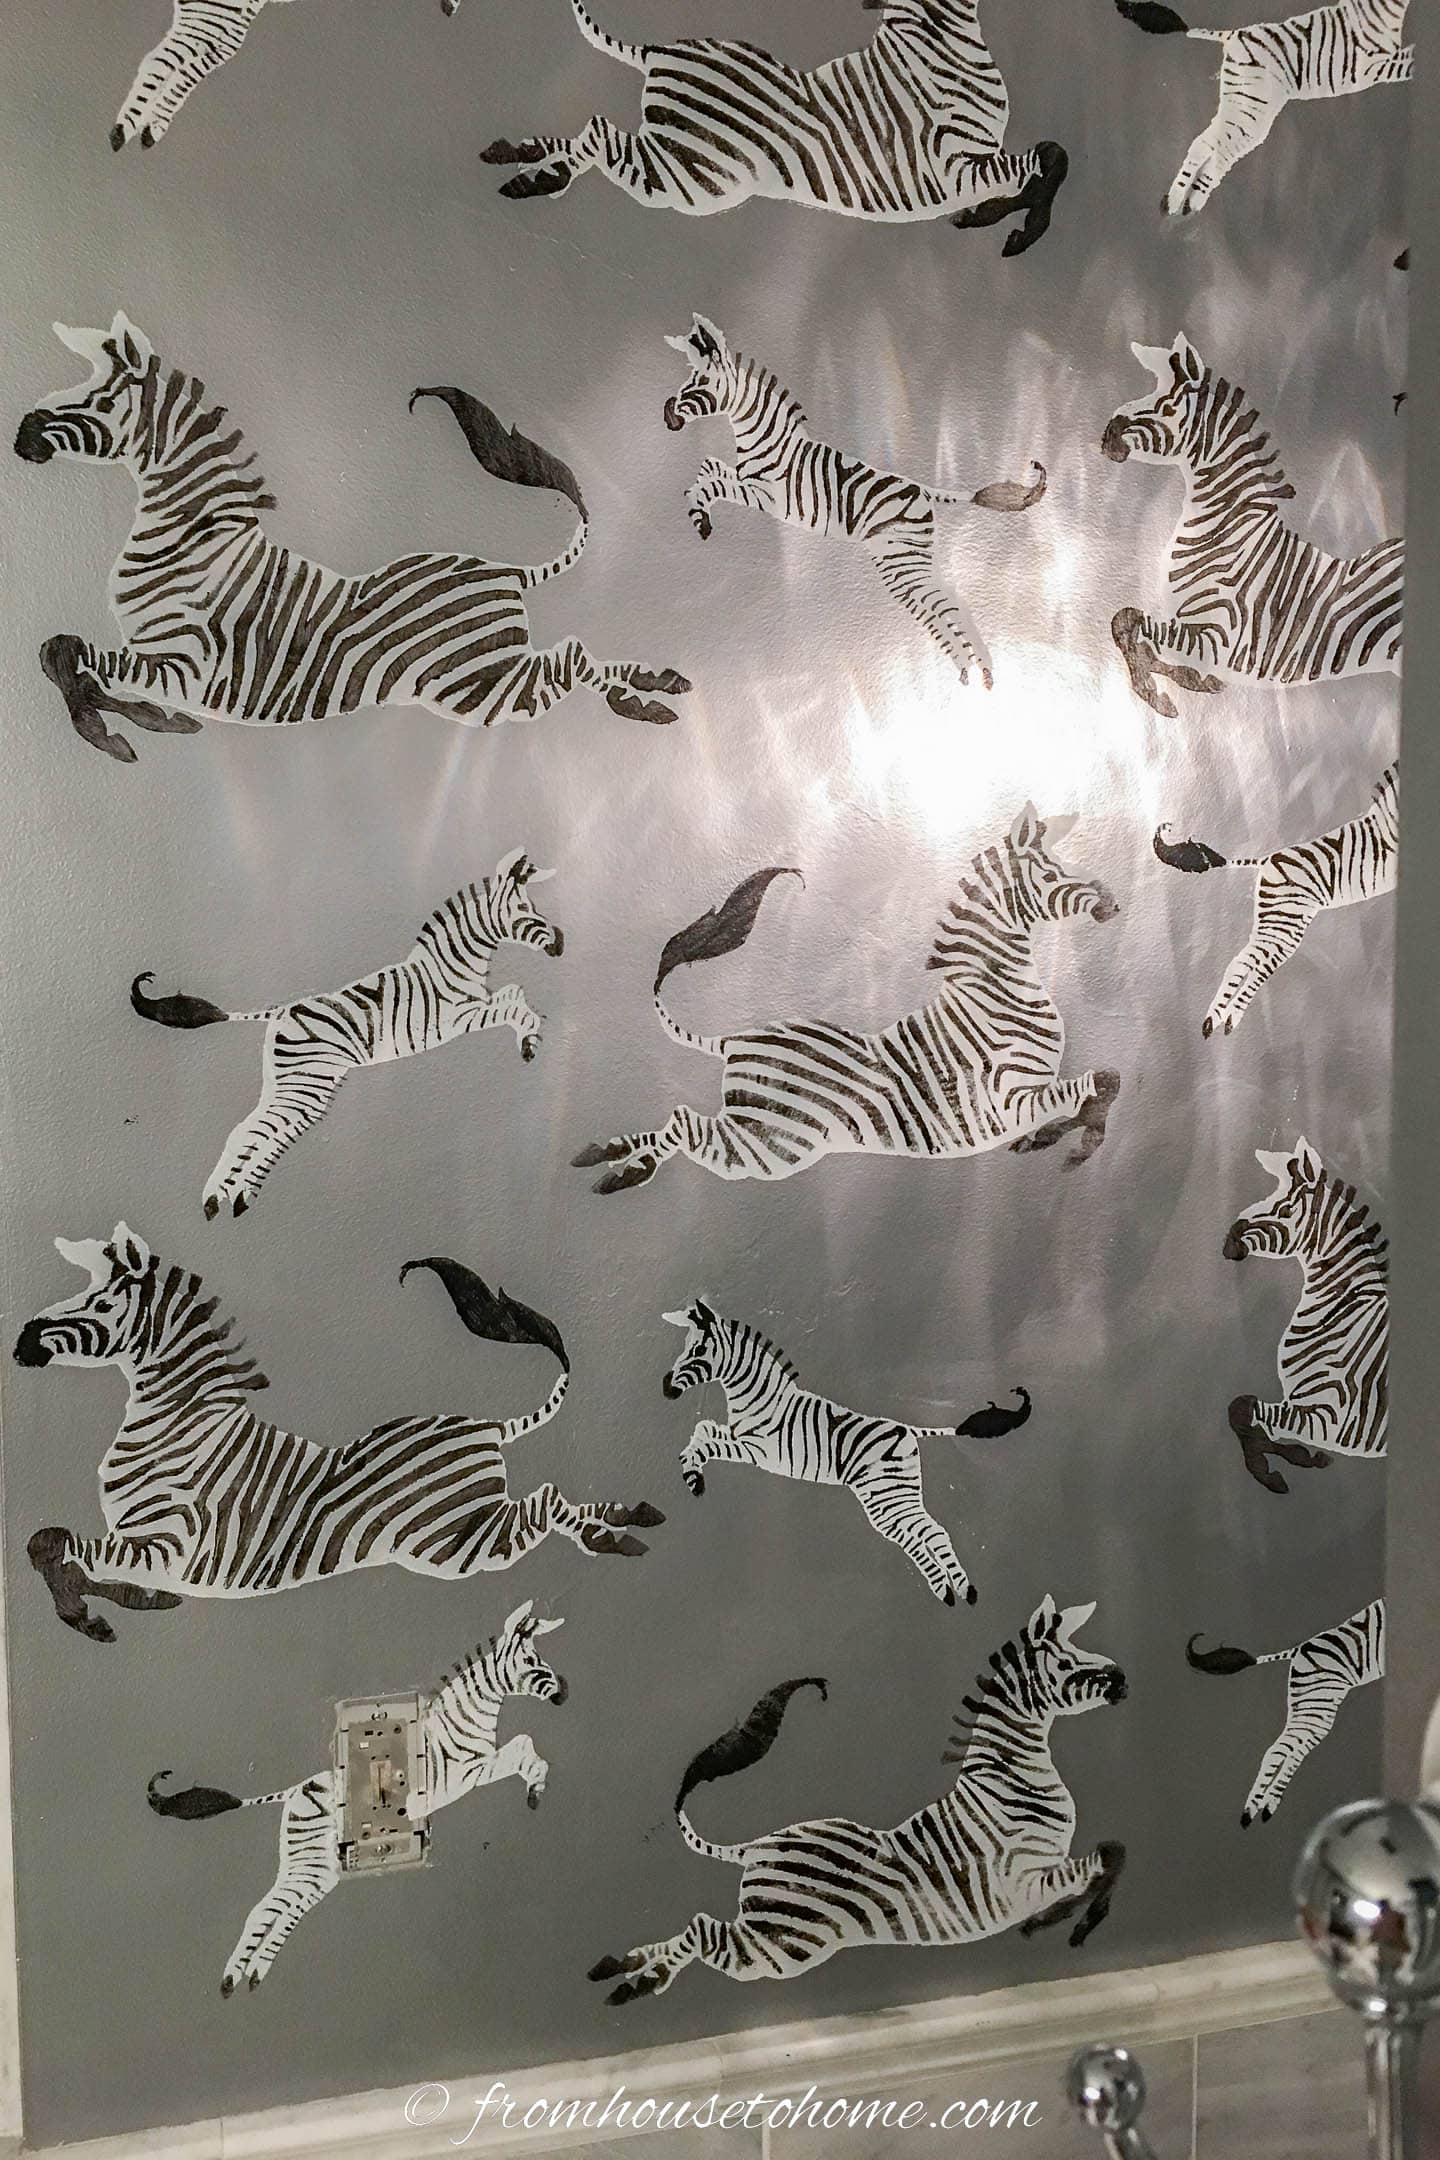 Cricut stencil of zebras